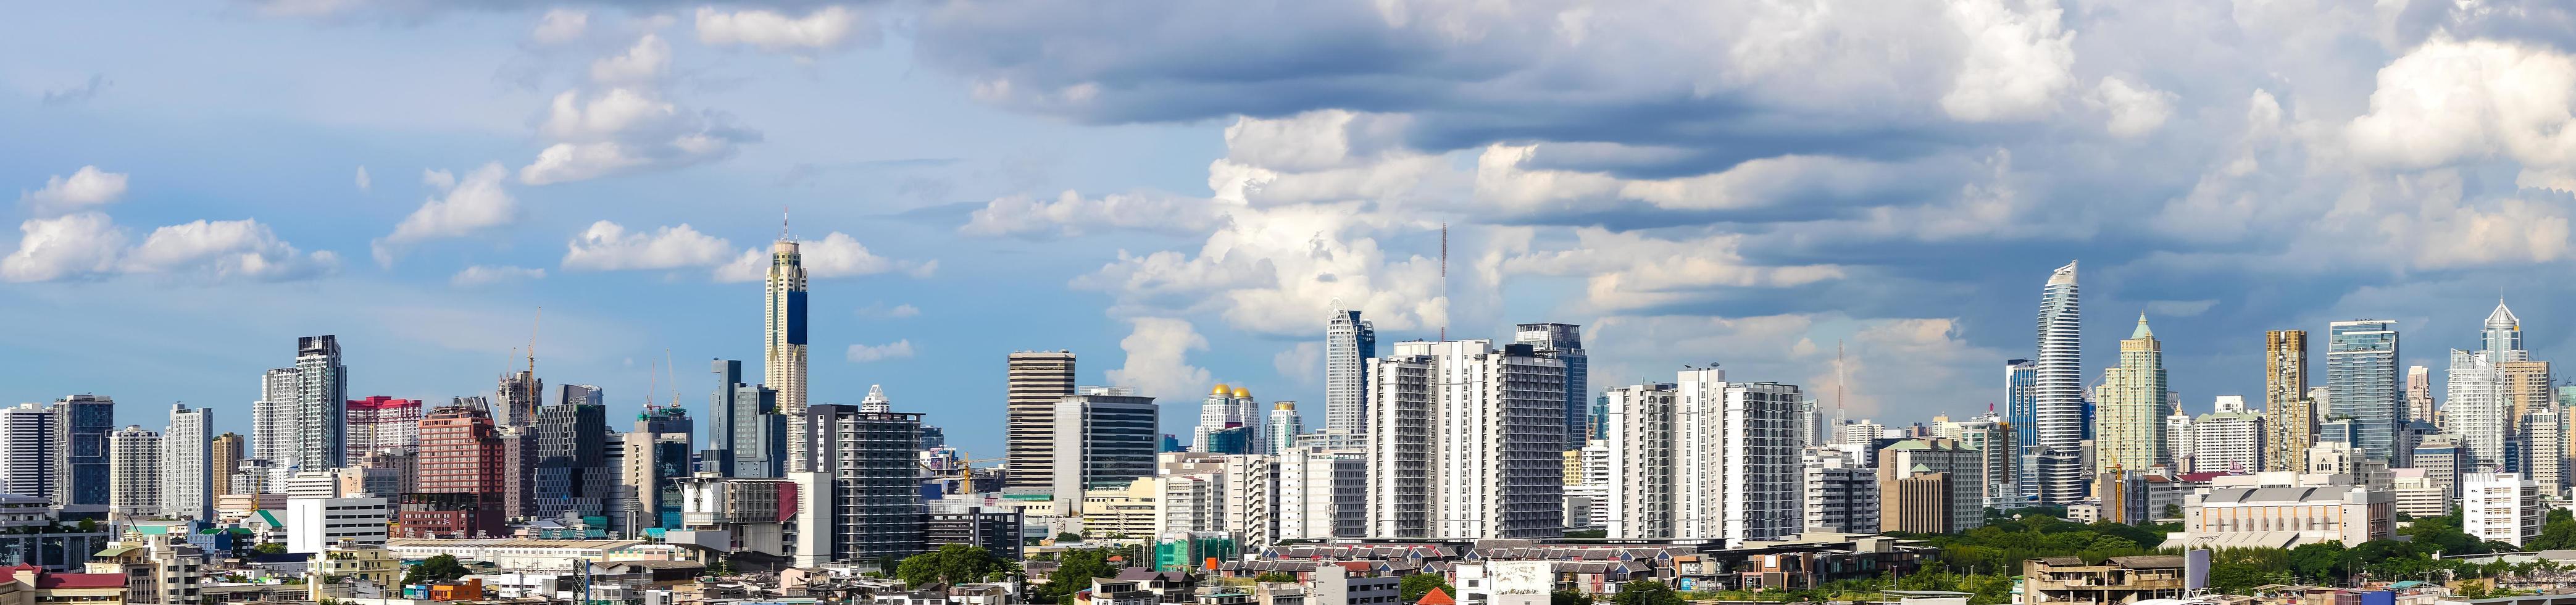 image panoramique - bâtiment moderne dans le quartier des affaires de la ville de bangkok, thaïlande. photo